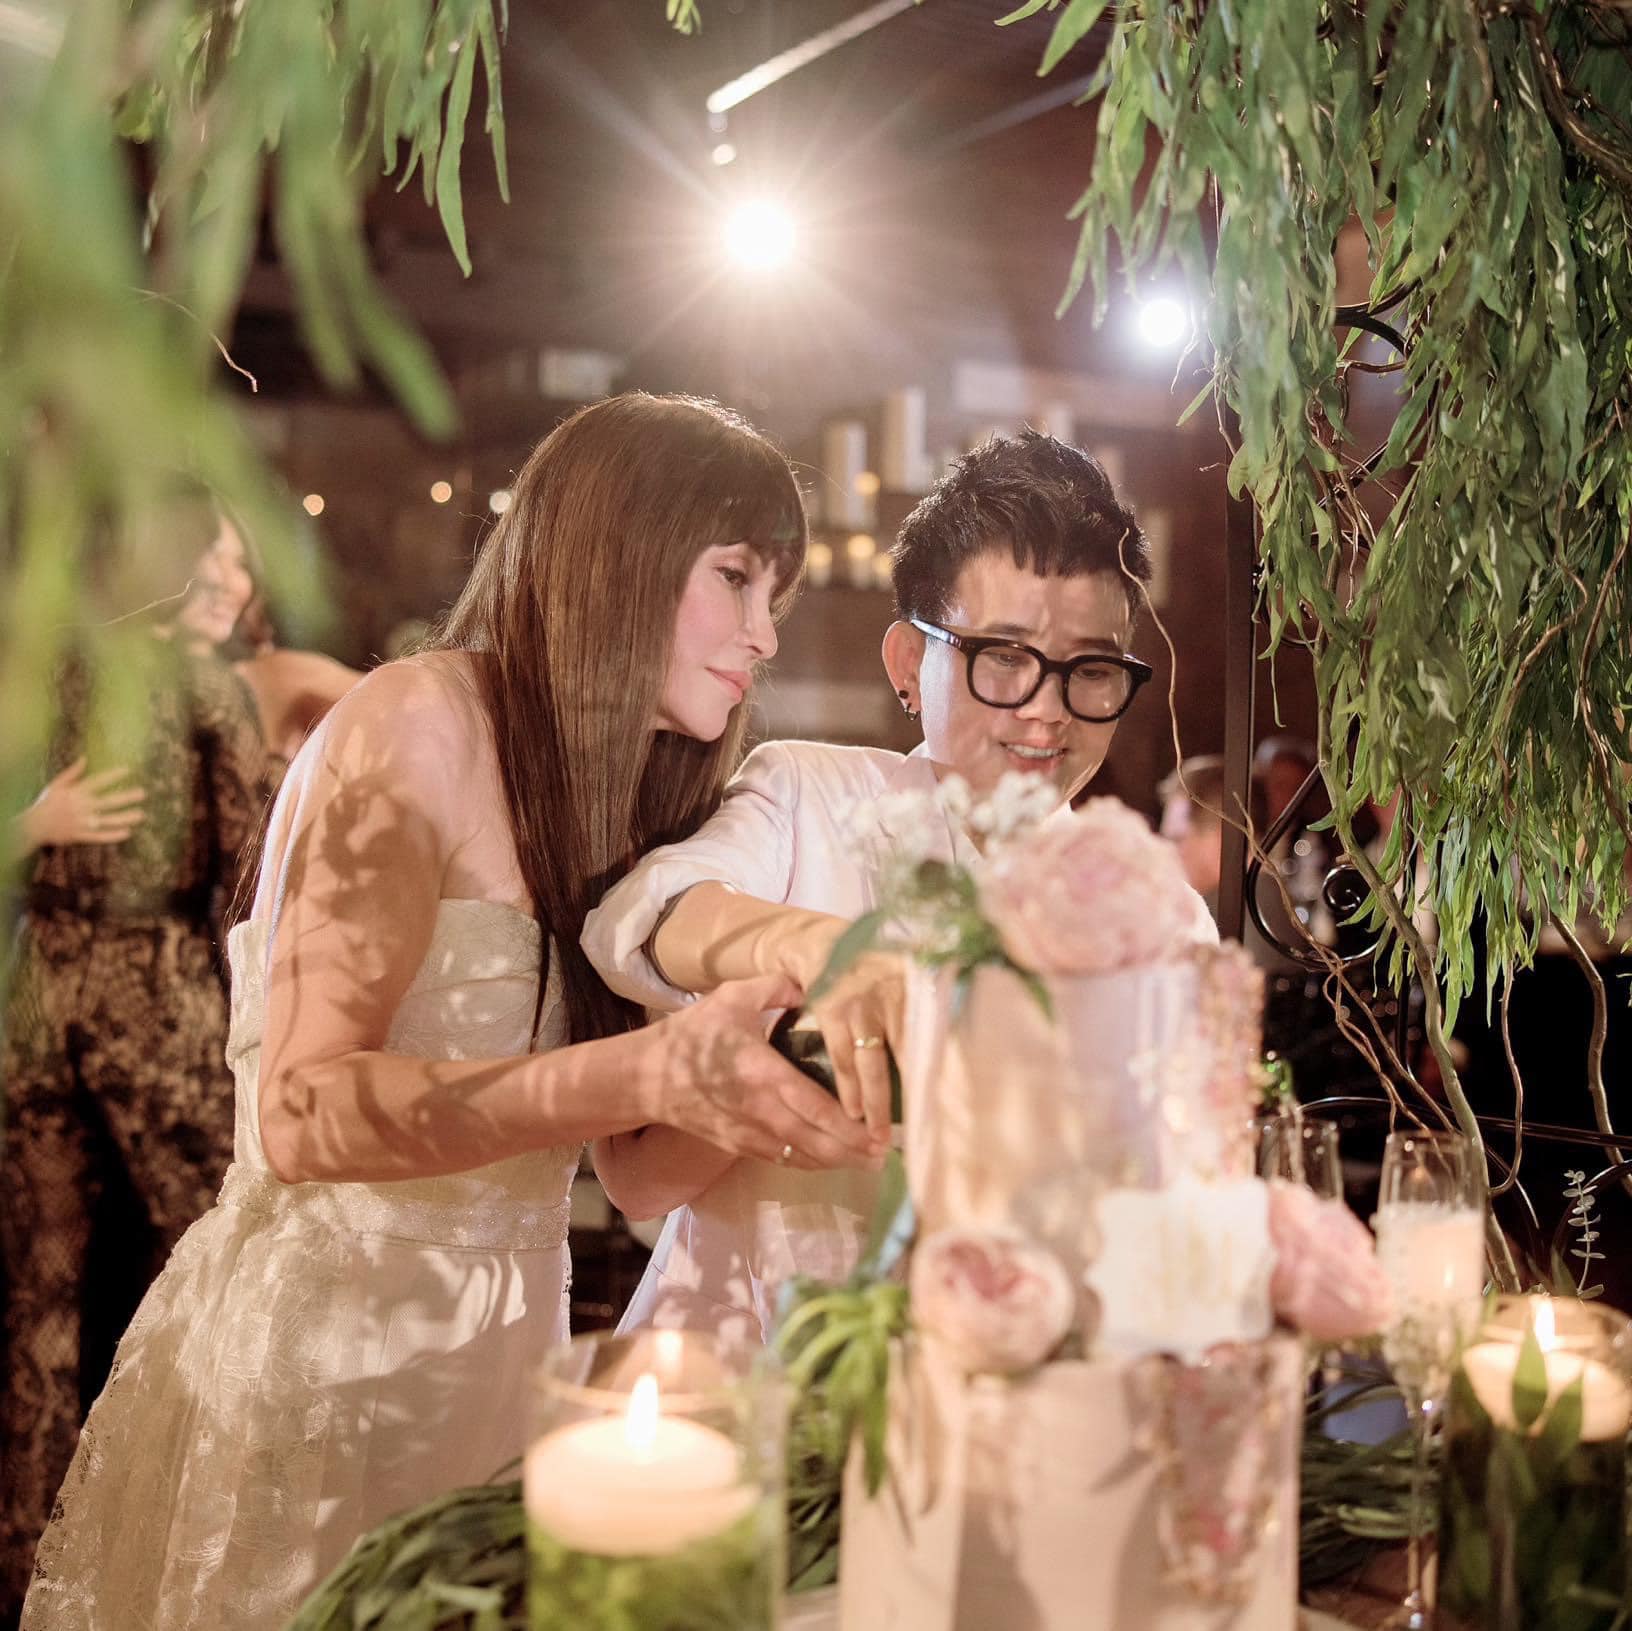 Tham gia đám cưới của dàn sao nổi tiếng, Thanh Hà và Phương Uyên, là một trải nghiệm đáng nhớ. Không chỉ thưởng thức các món ăn ngon, mà còn thấy được tình yêu thăng hoa của cặp đôi này. Hãy xem hình ảnh đẹp và vui nhộn trong đám cưới này!